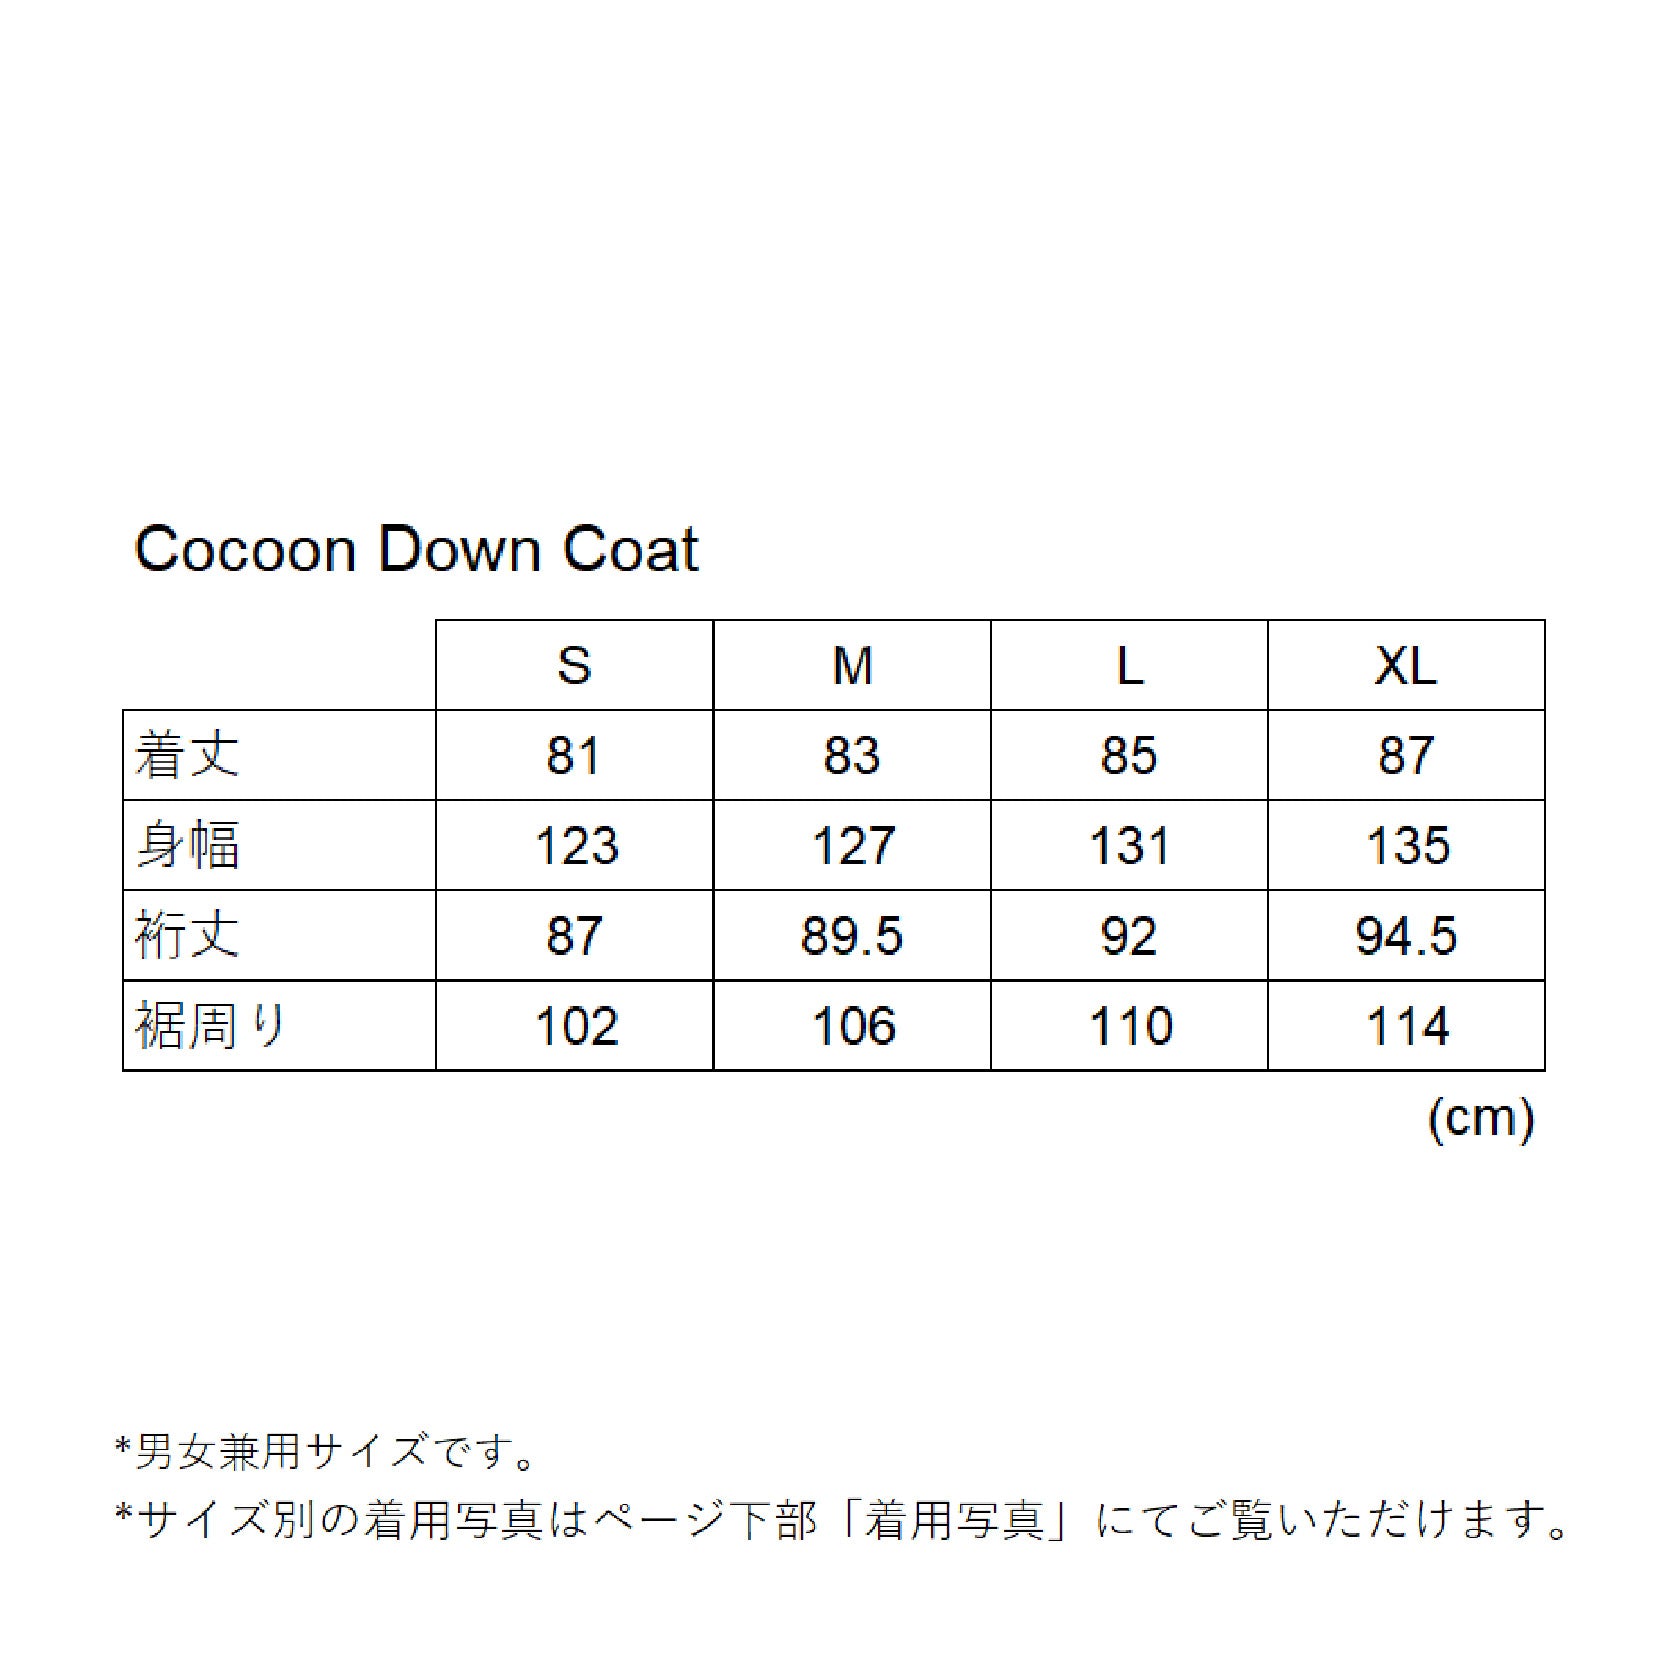 Cocoon Down Coat